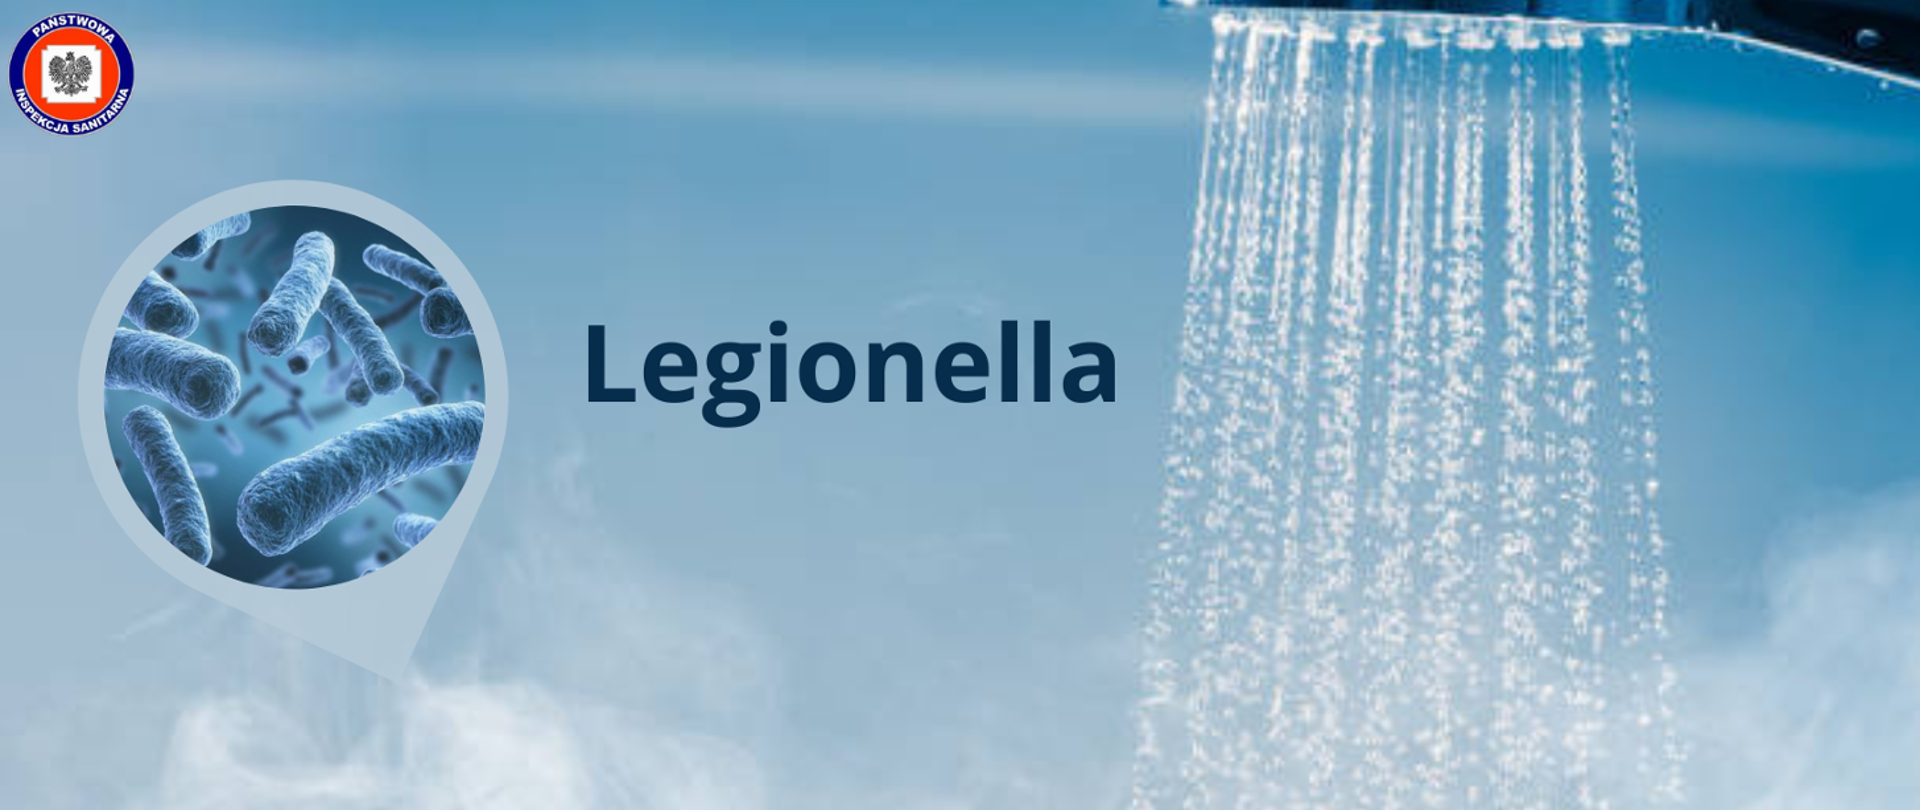 Po prawej stronie prysznic z cieknącą wodą a po lewej grafika bakterii umieszczona w kółku u góry logo Inspekcji sanitarnej a po środku napis Legionella